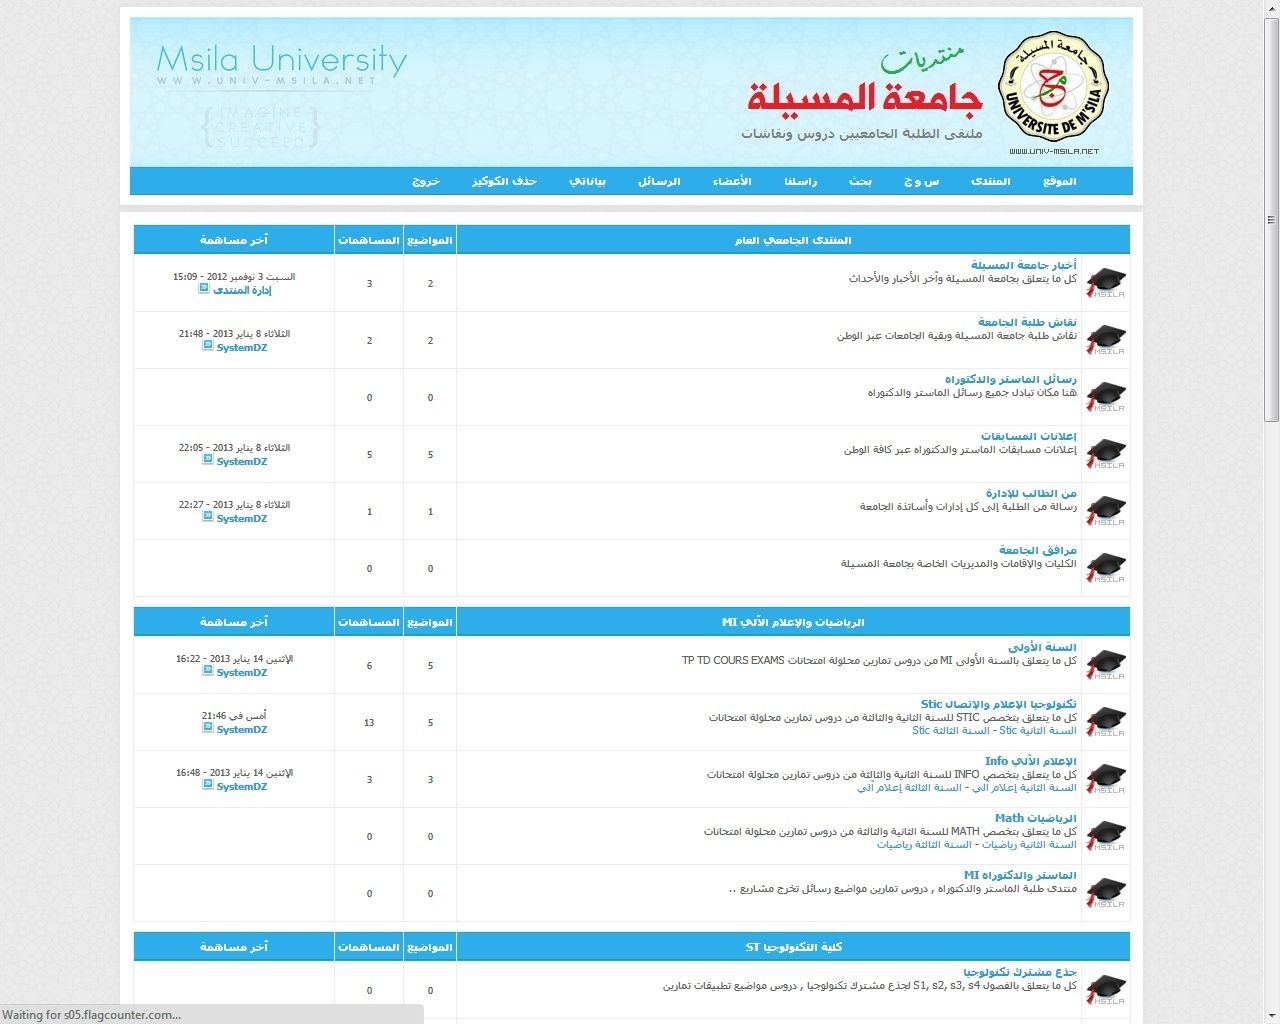 منتديات جامعة المسيلة | www.univ-msila.net | قالب احترافي تصميم خاص ودومين أتحدى ما يعجبكم Univer10